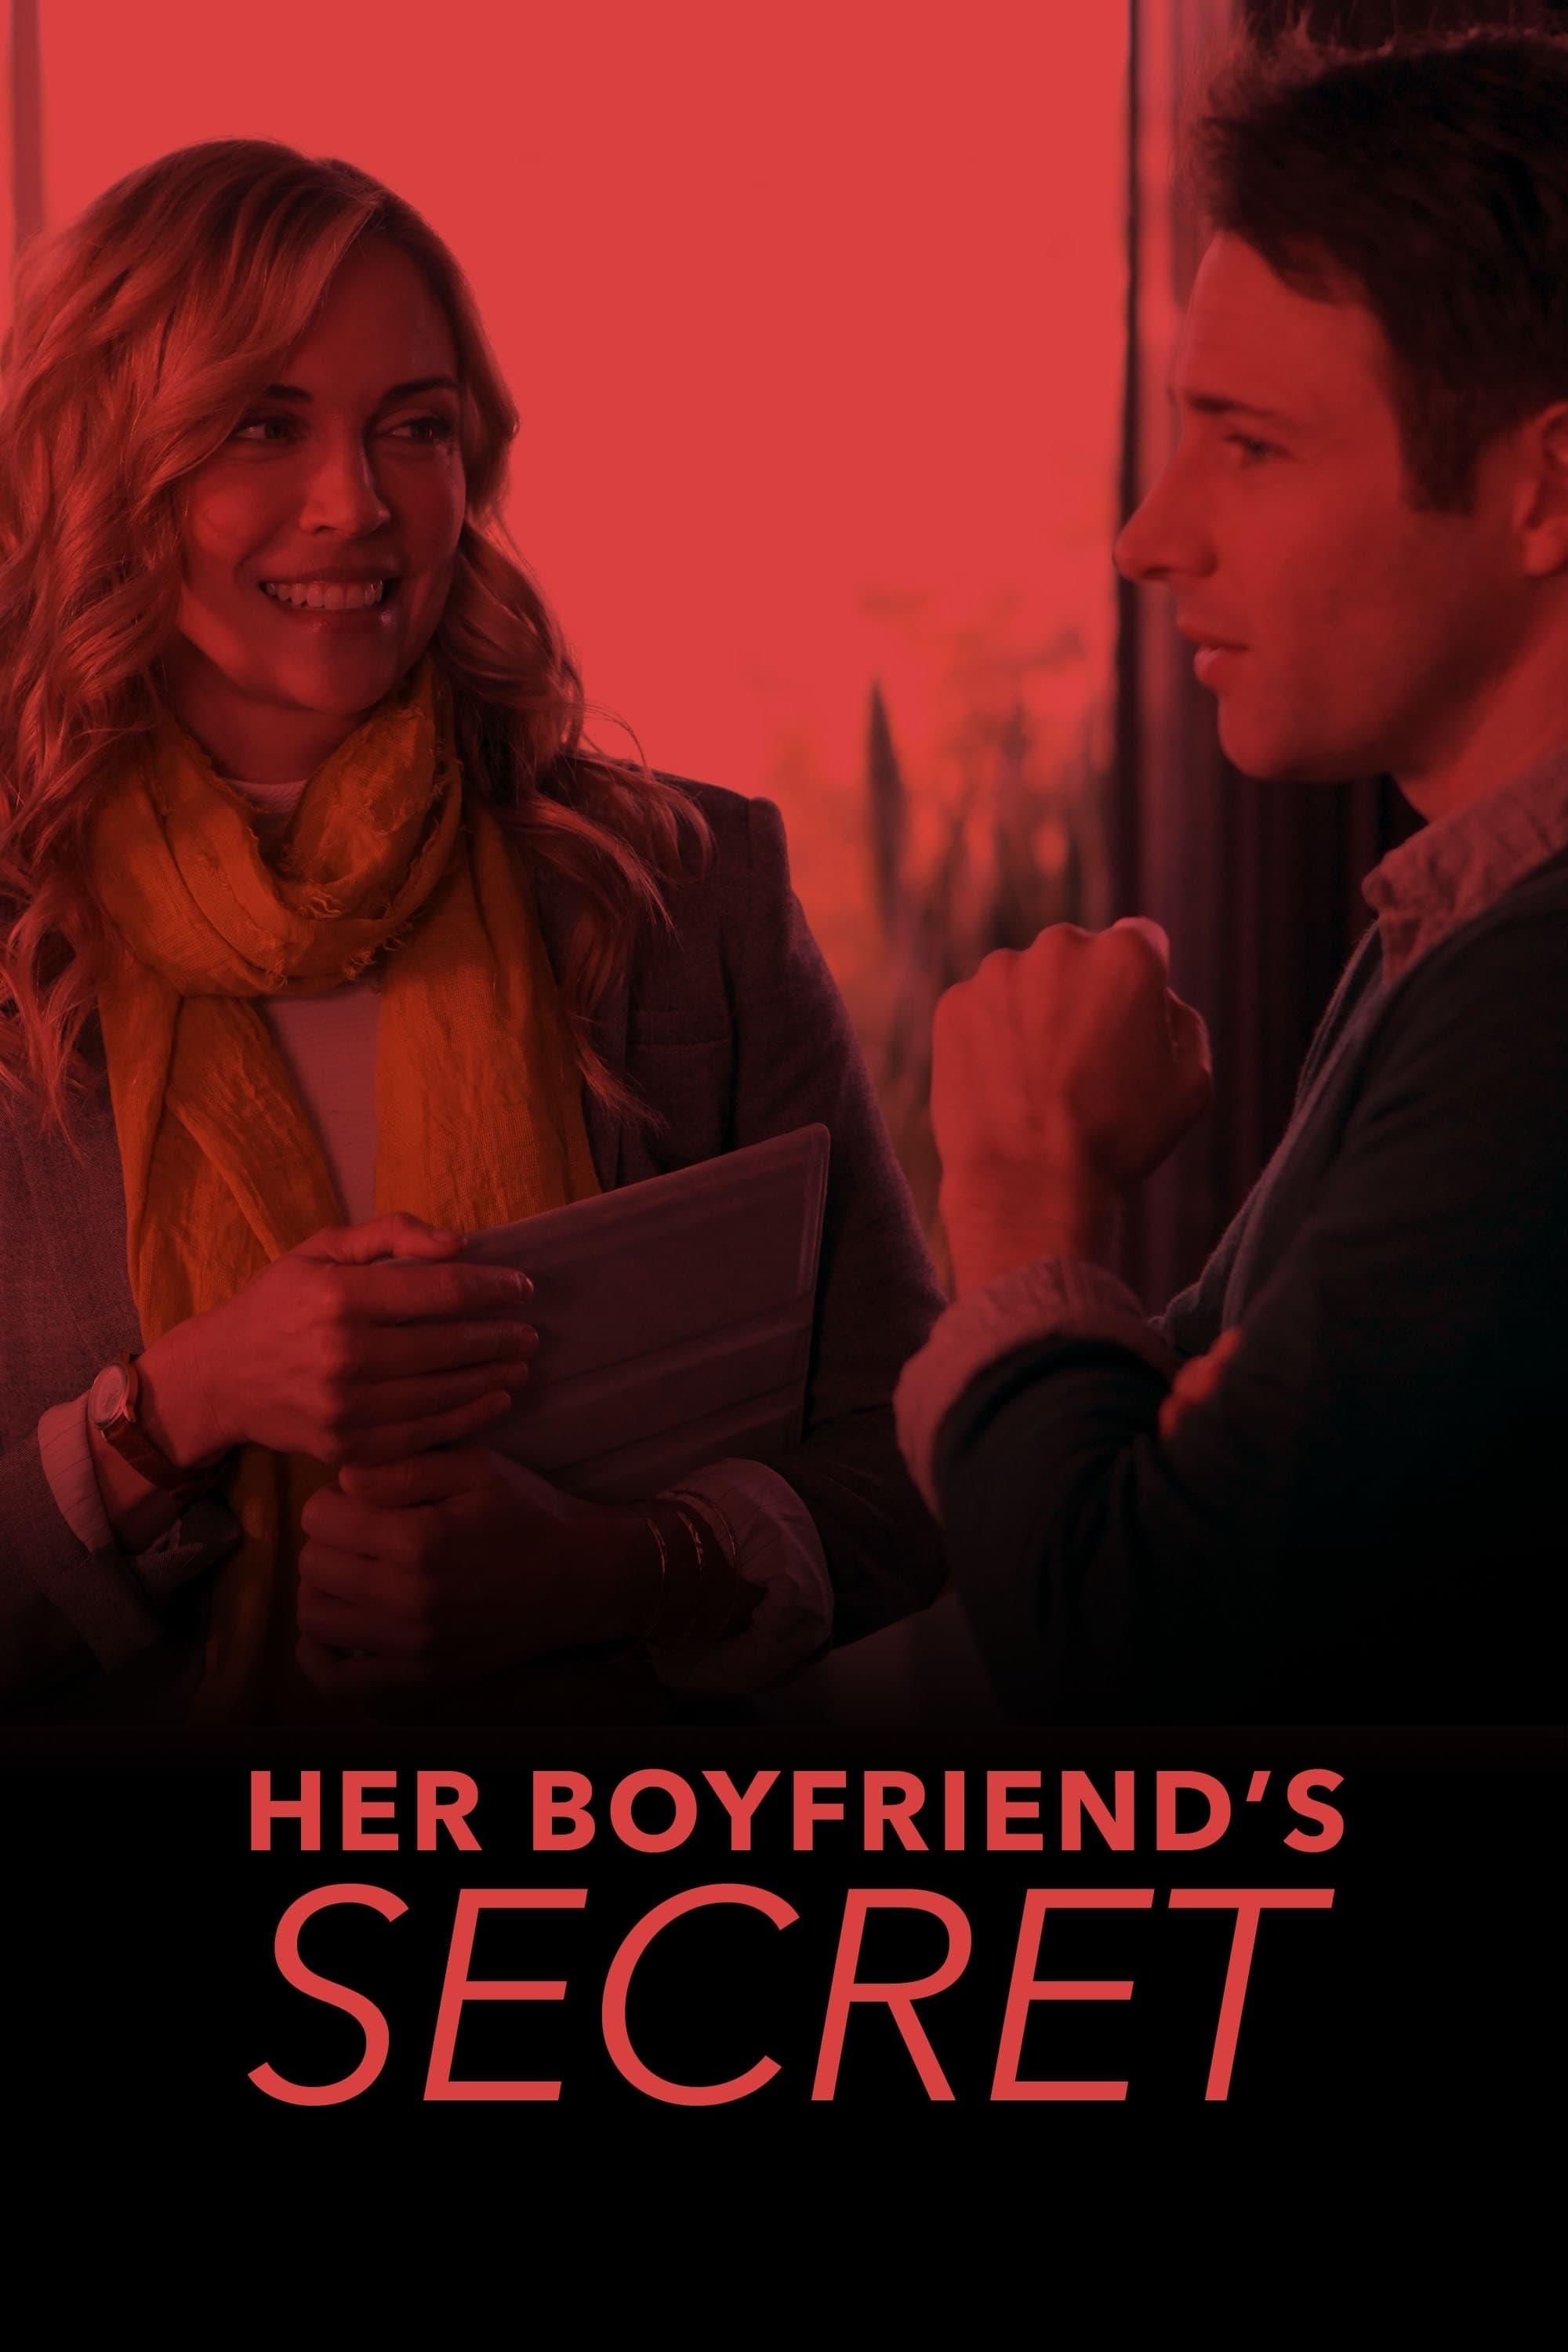 Her Boyfriend's Secret poster